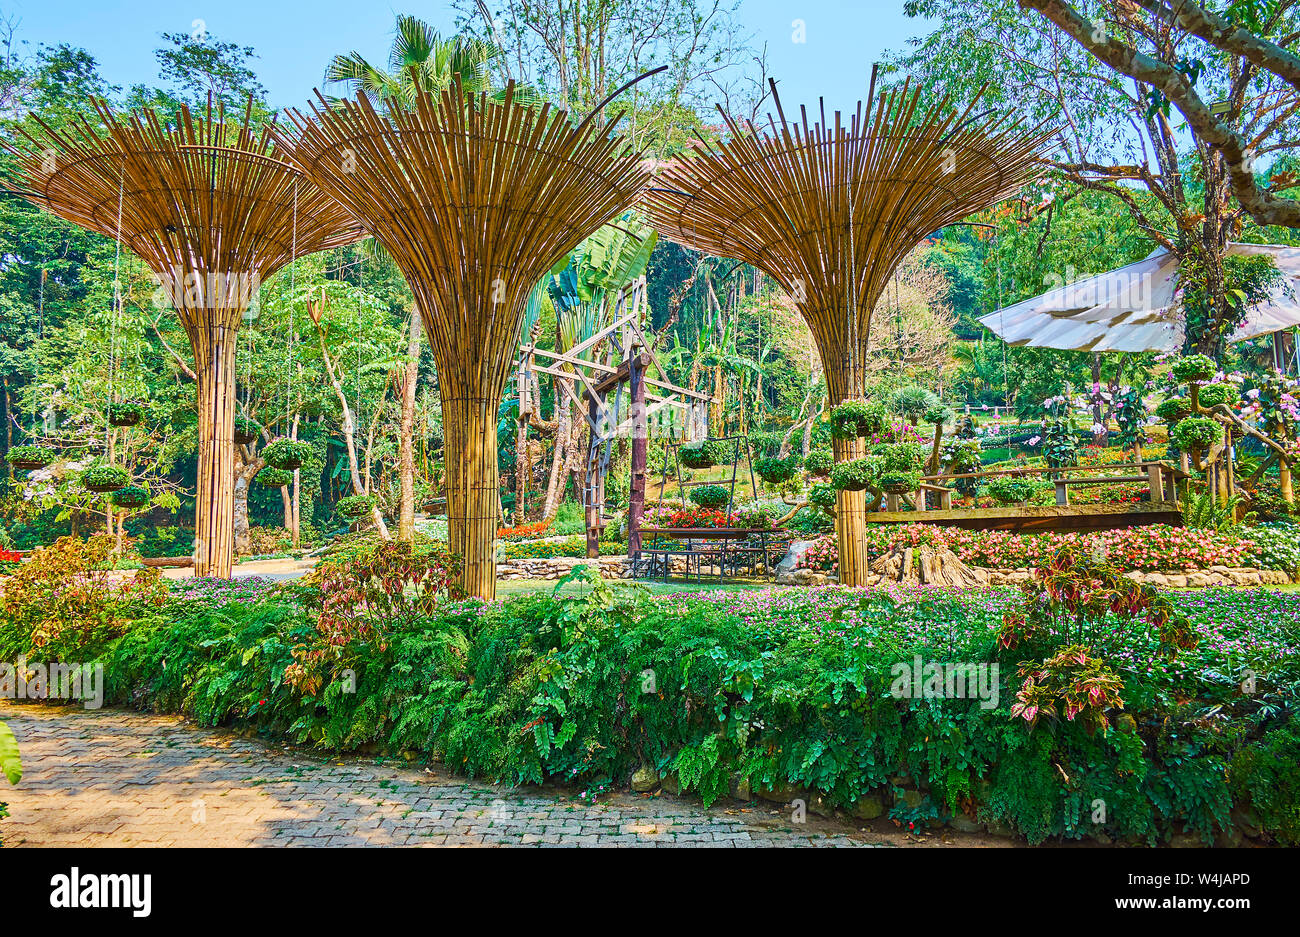 La callejuela verde de Mae Fah Luang jardín está decorado con helecho valla, cortado árboles y bambú sombrillas con plantas macetas colgantes, Doi Tung, TA Fotografía de stock - Alamy